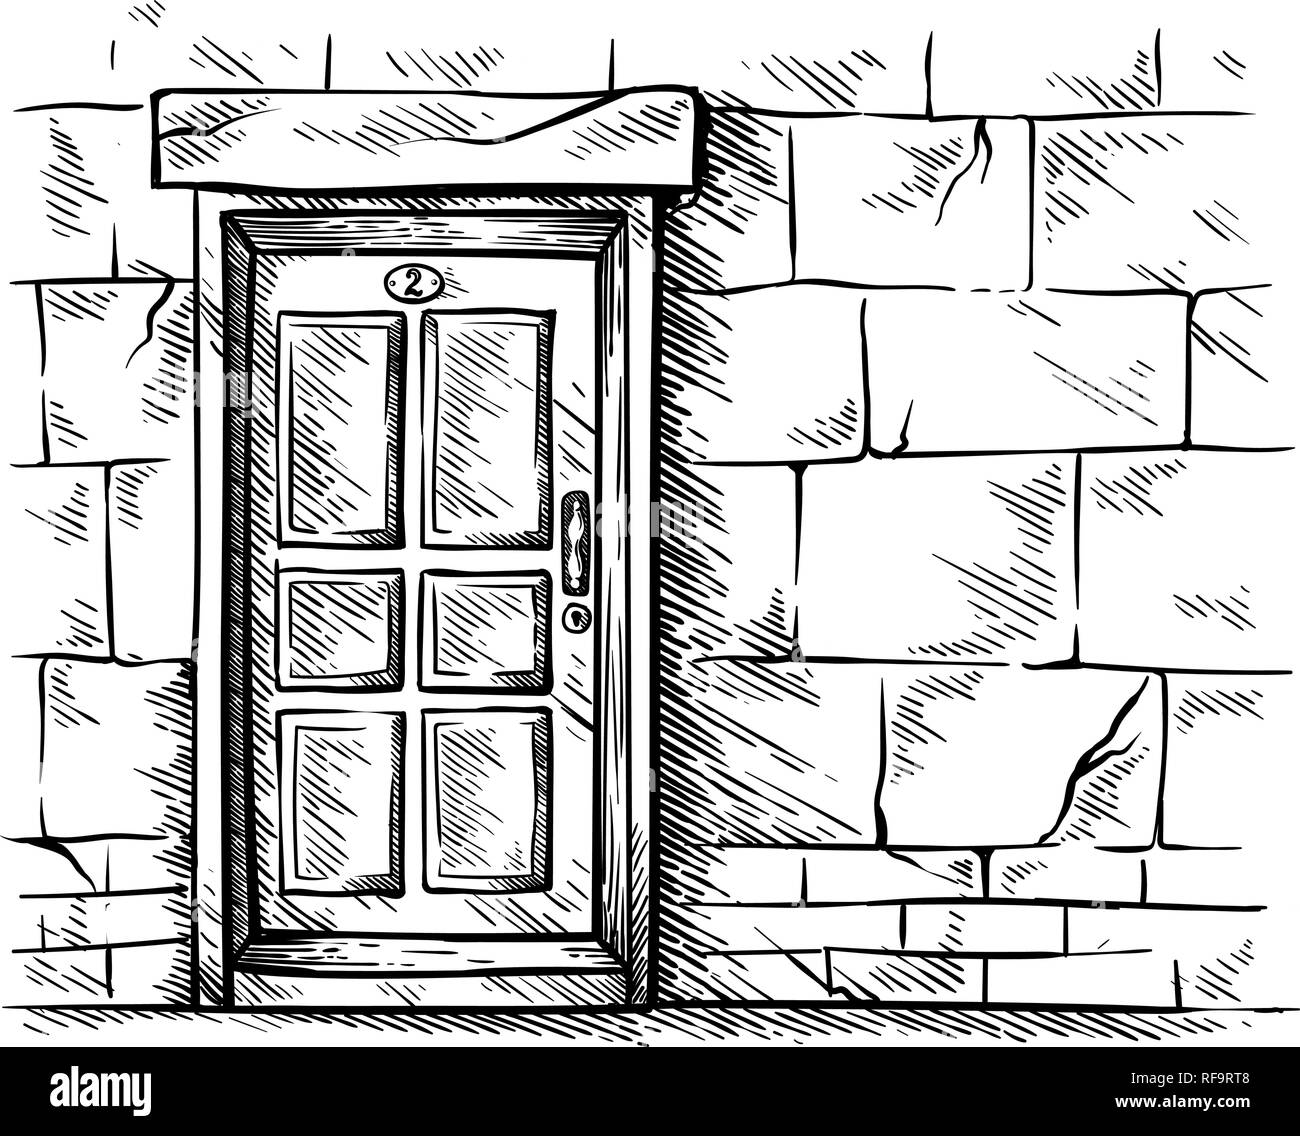 Close The Door Vector Art PNG Wooden Door Closed Design Line Drawing Door  Black And White Clipart Door Clipart Black And White Sketch Positive PNG  Image For Free Download